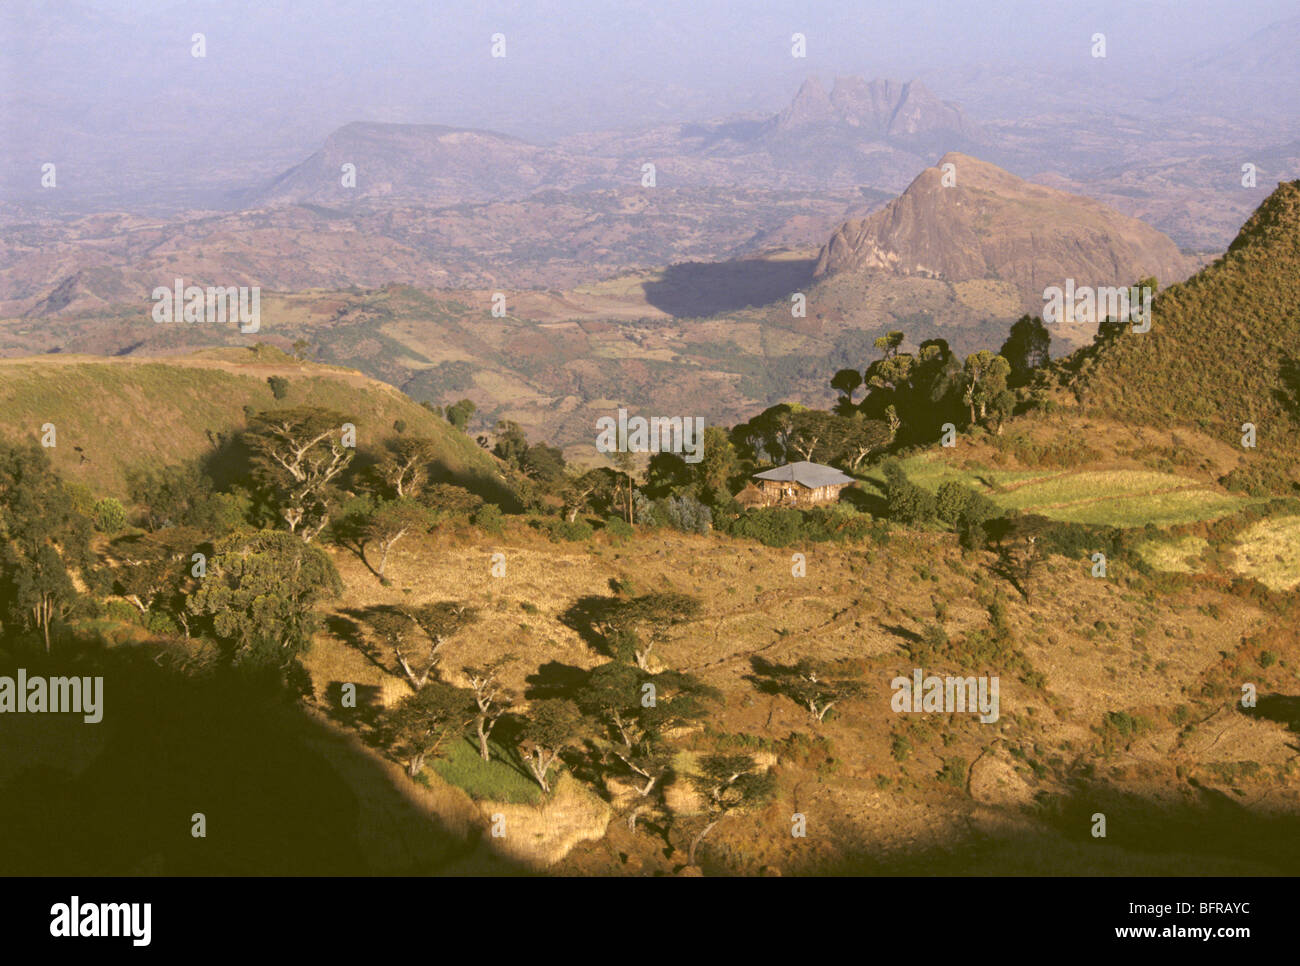 Lalibela landscape Stock Photo